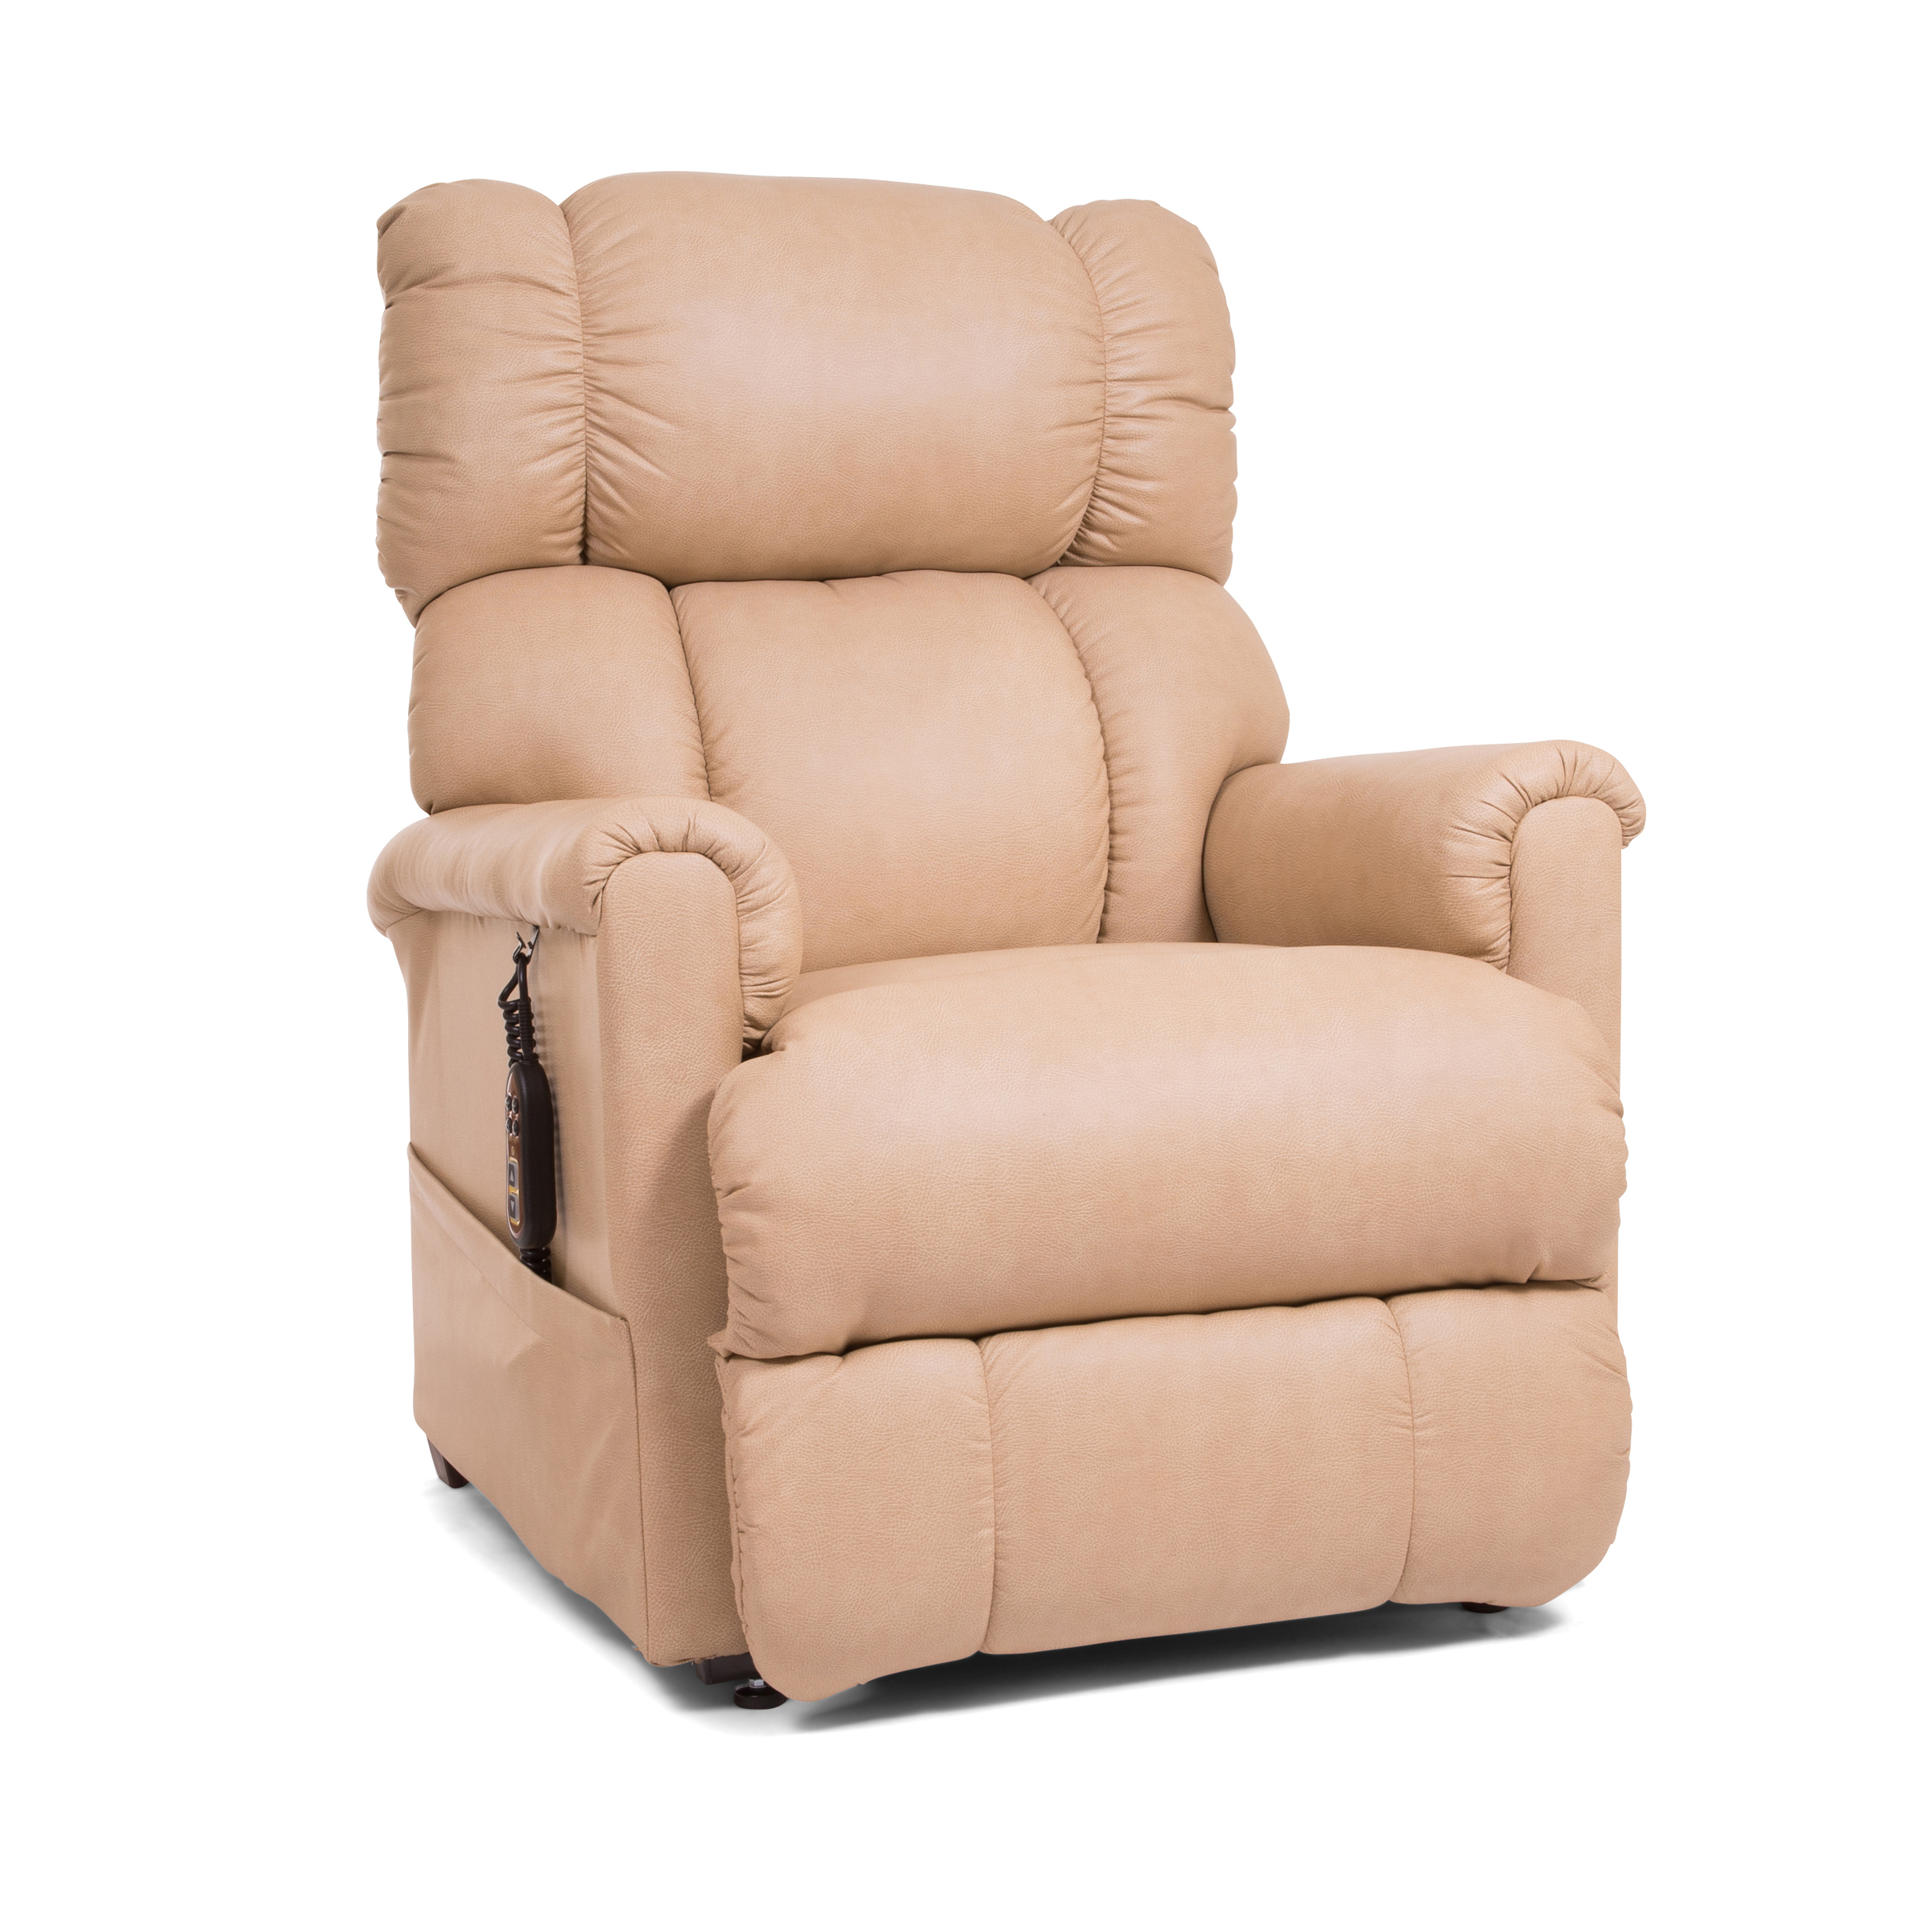 Golden Tech Imperial PR404 3-Position Lift Chair